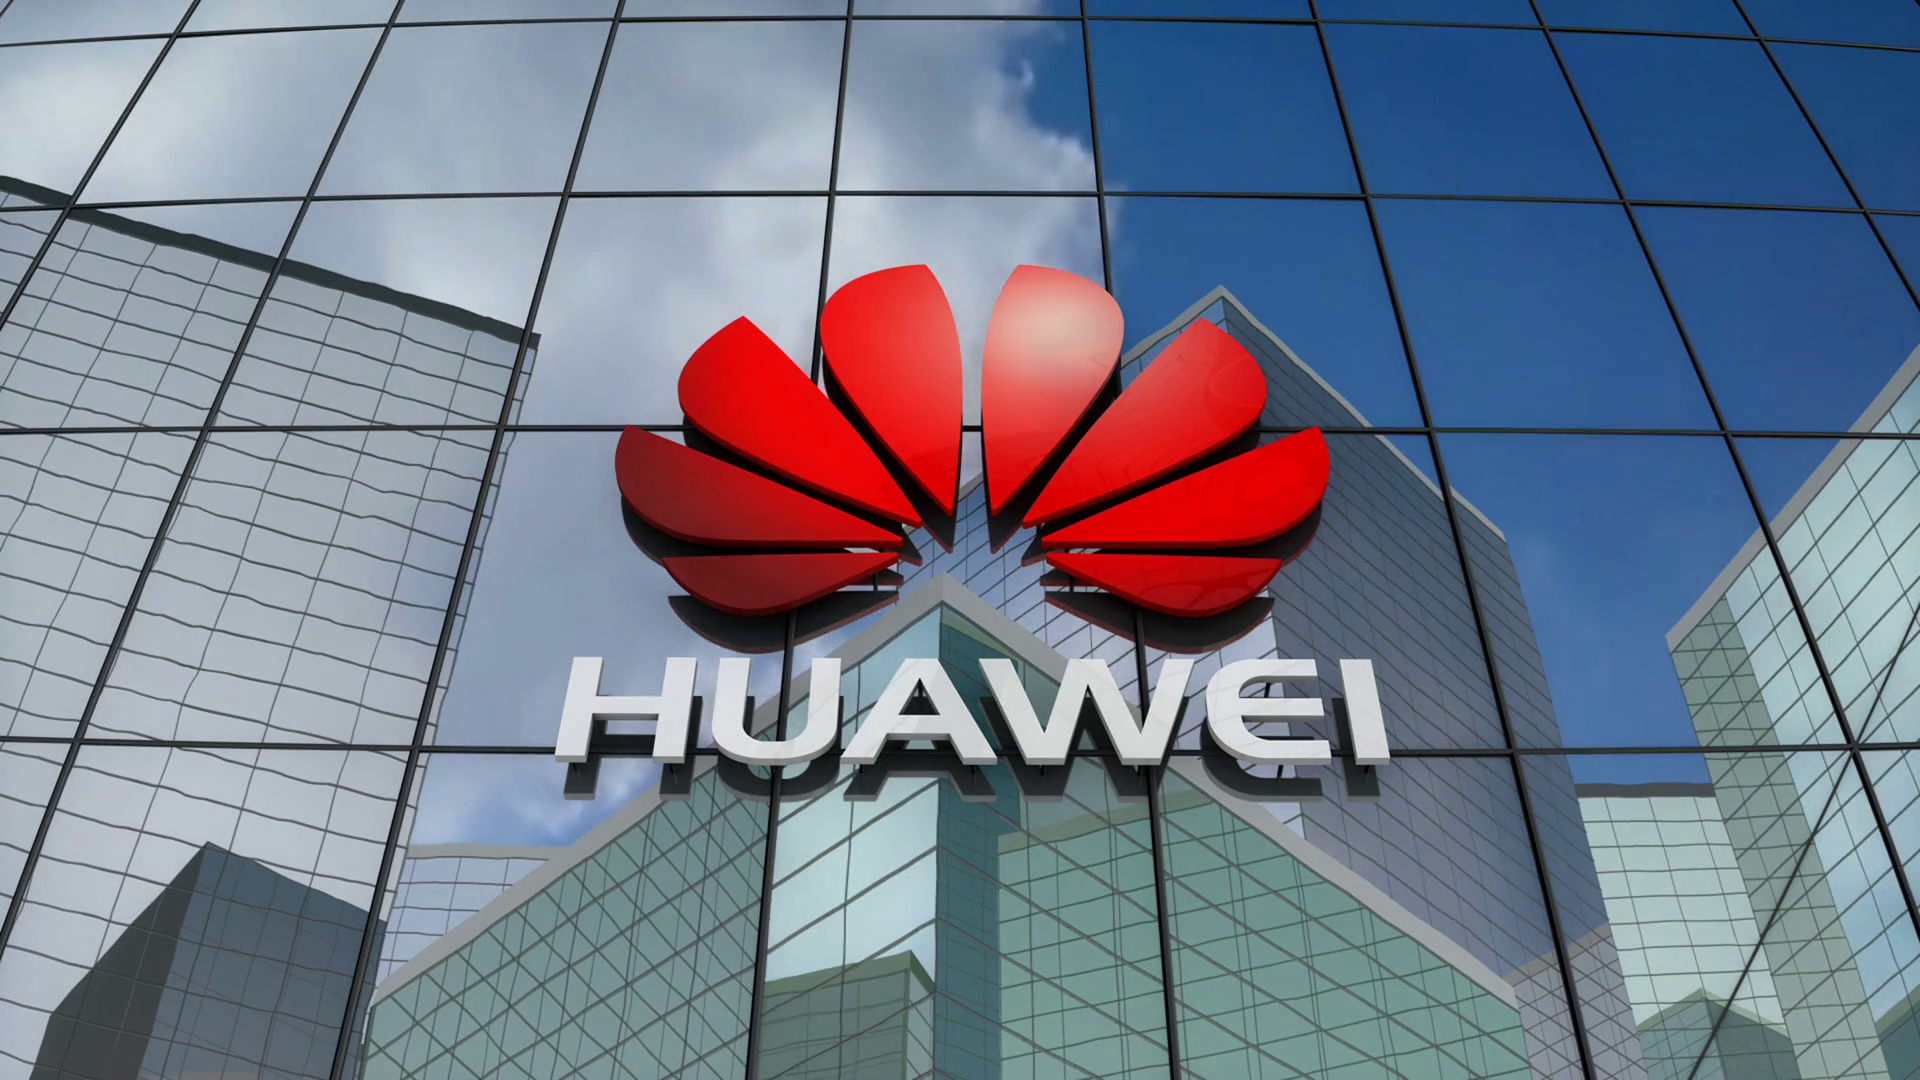 Huawei technologies